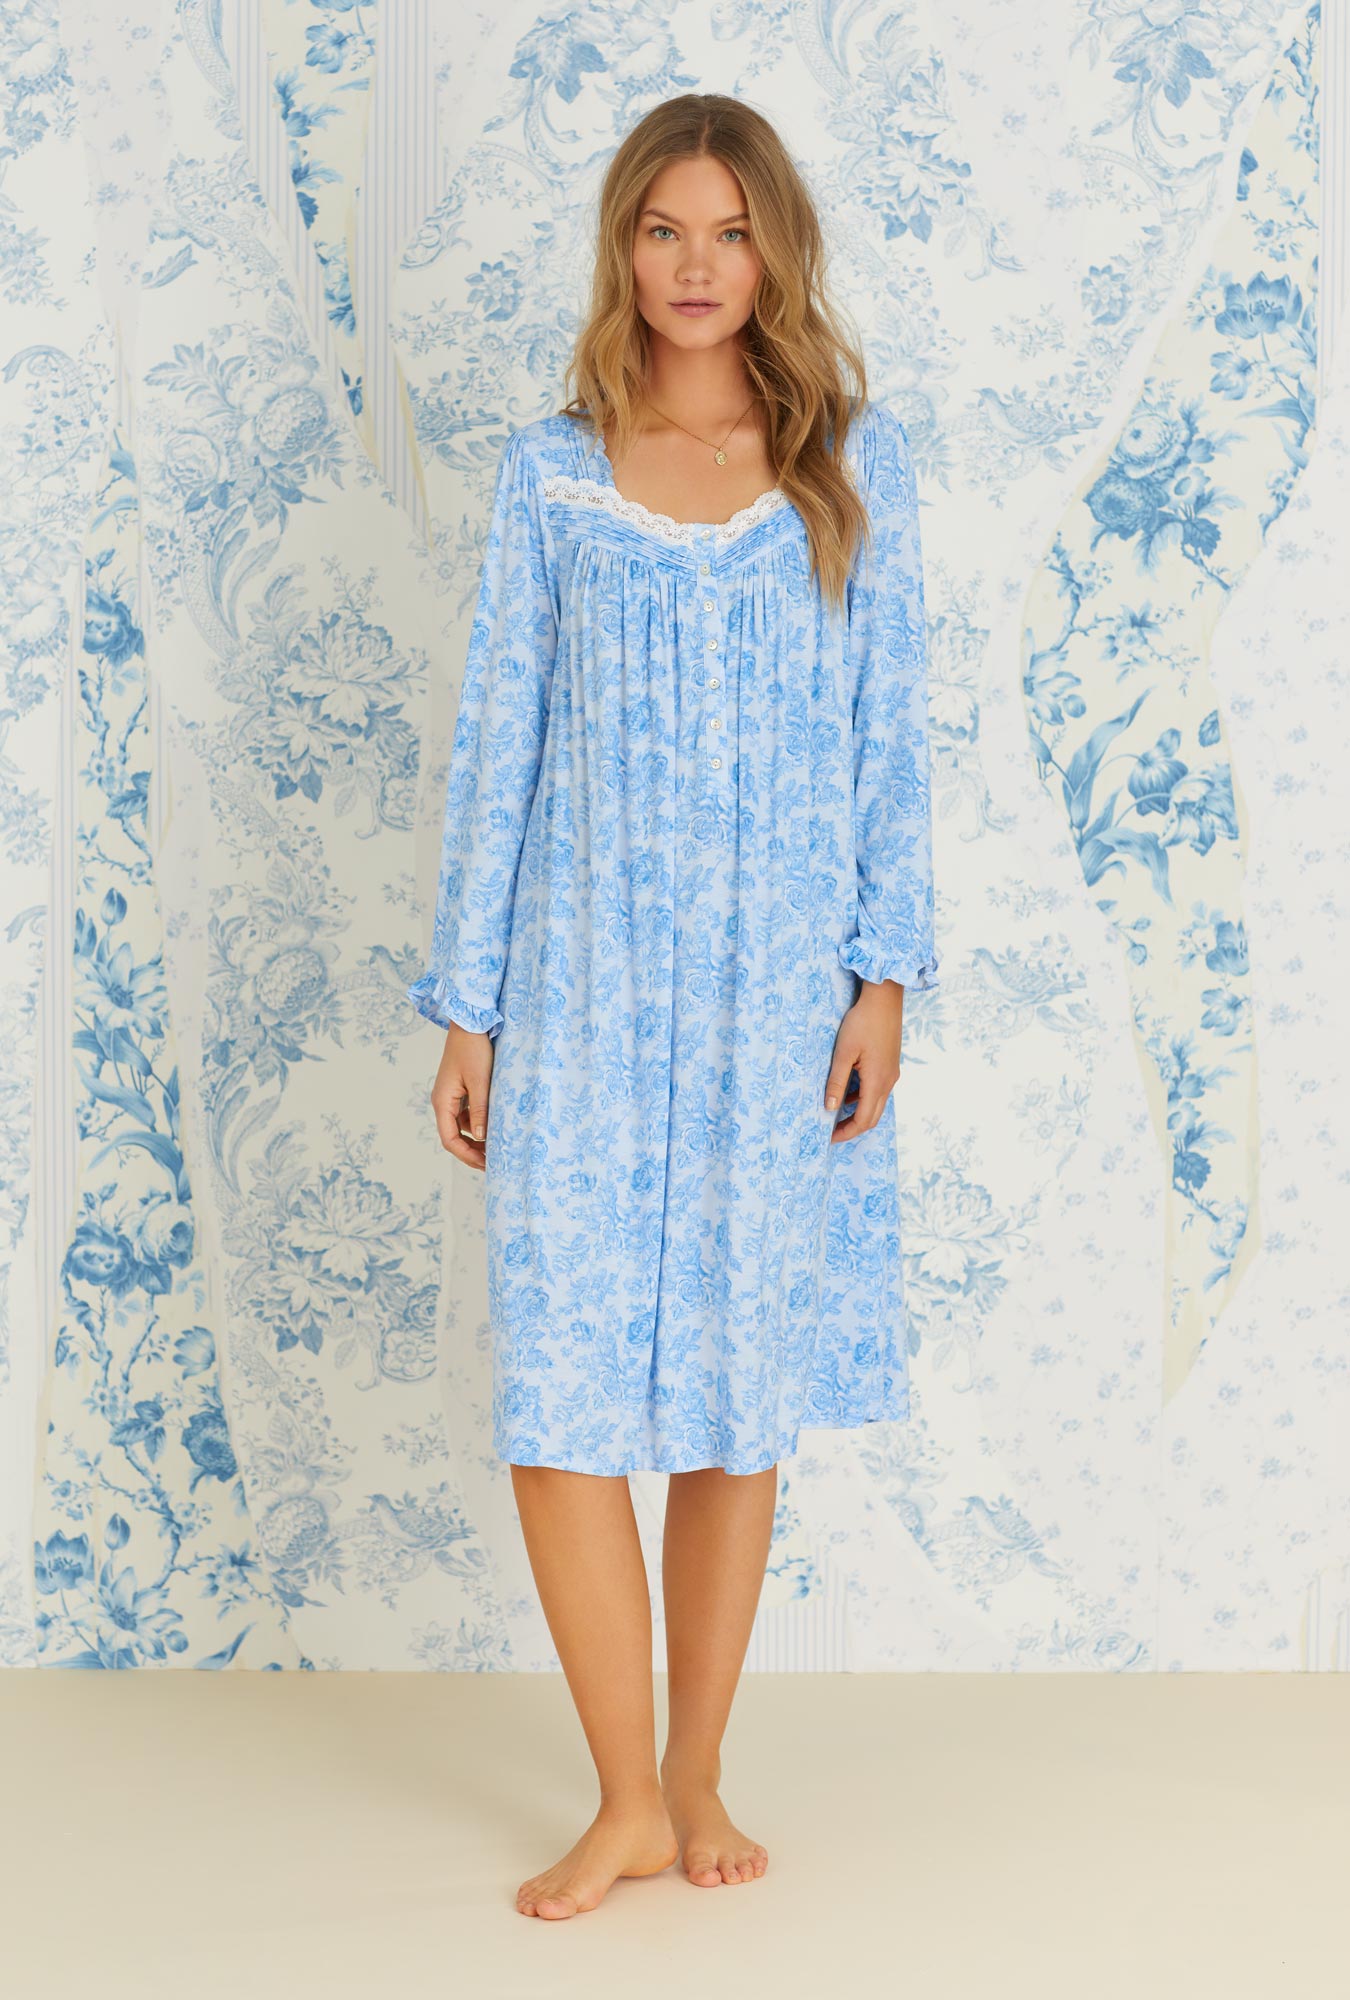 A lady wearing long sleeve tencel blue denim roses knit waltz nightgown.